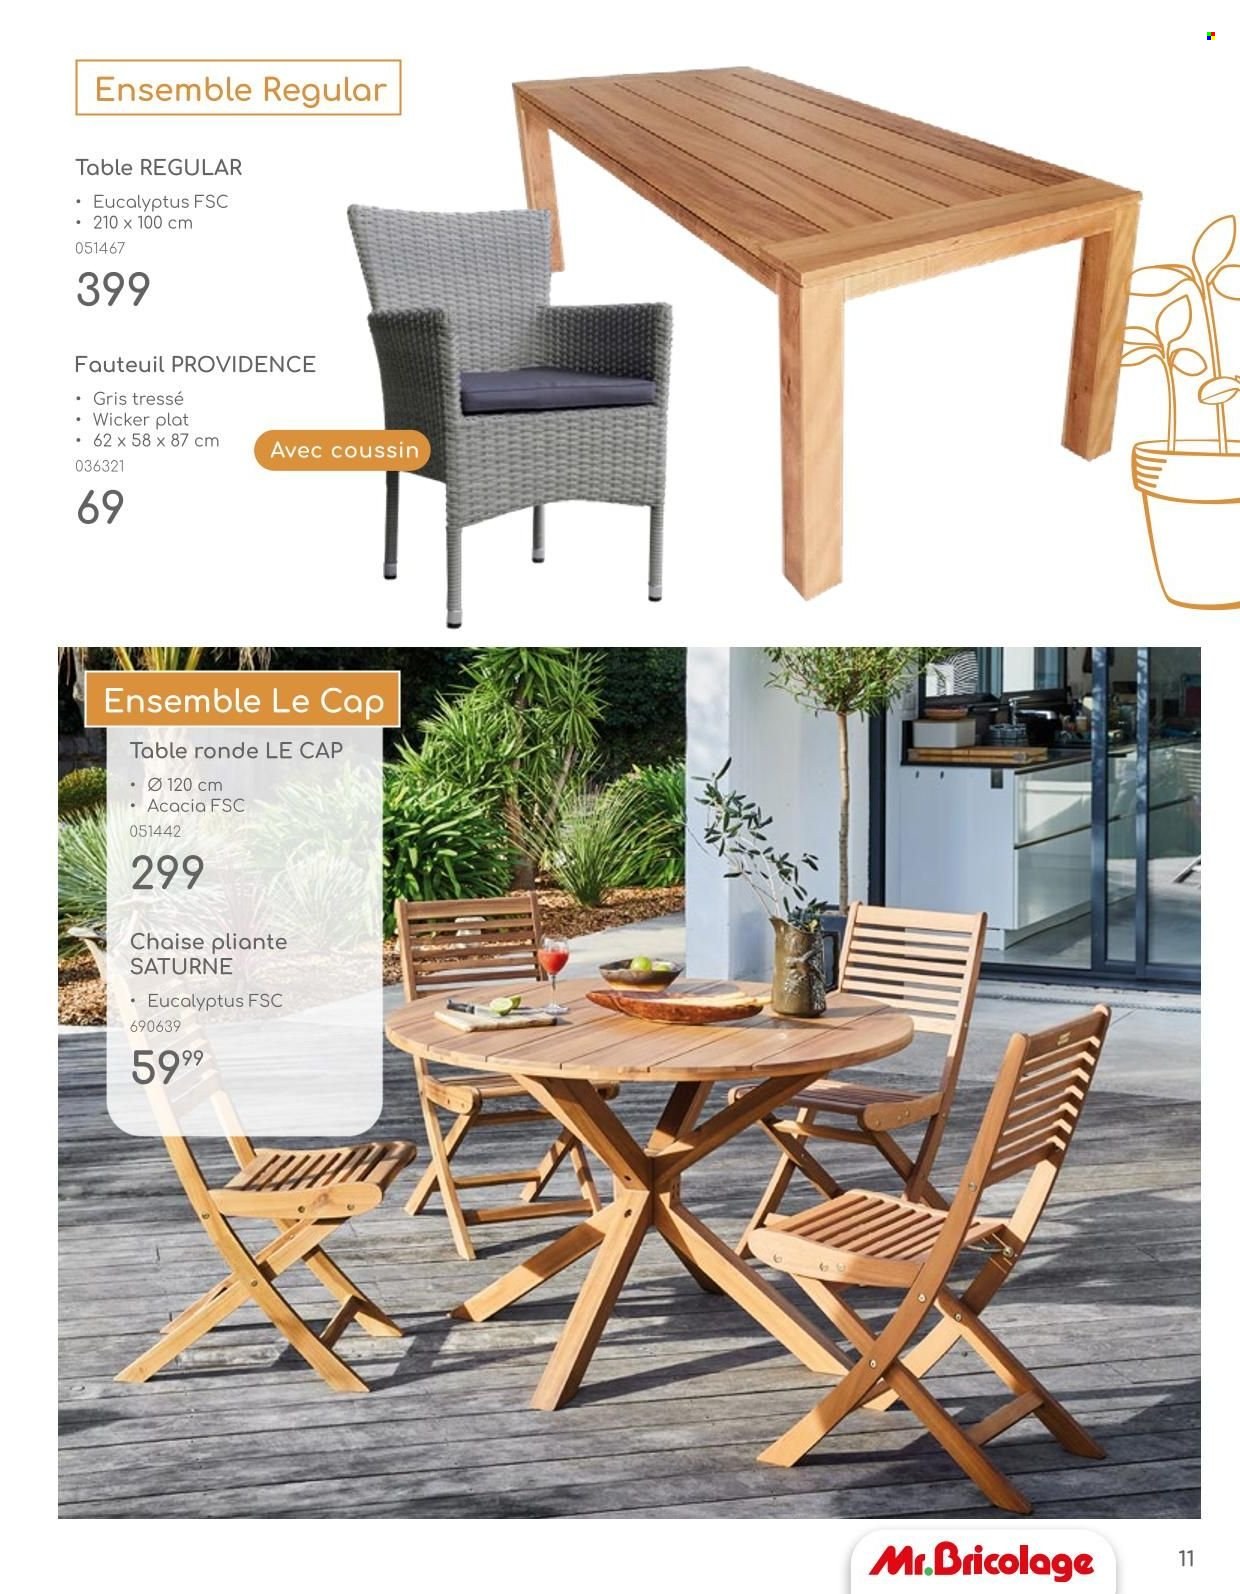 thumbnail - Catalogue Mr. Bricolage - Produits soldés - table, fauteuil, chaise, chaise pliante. Page 11.